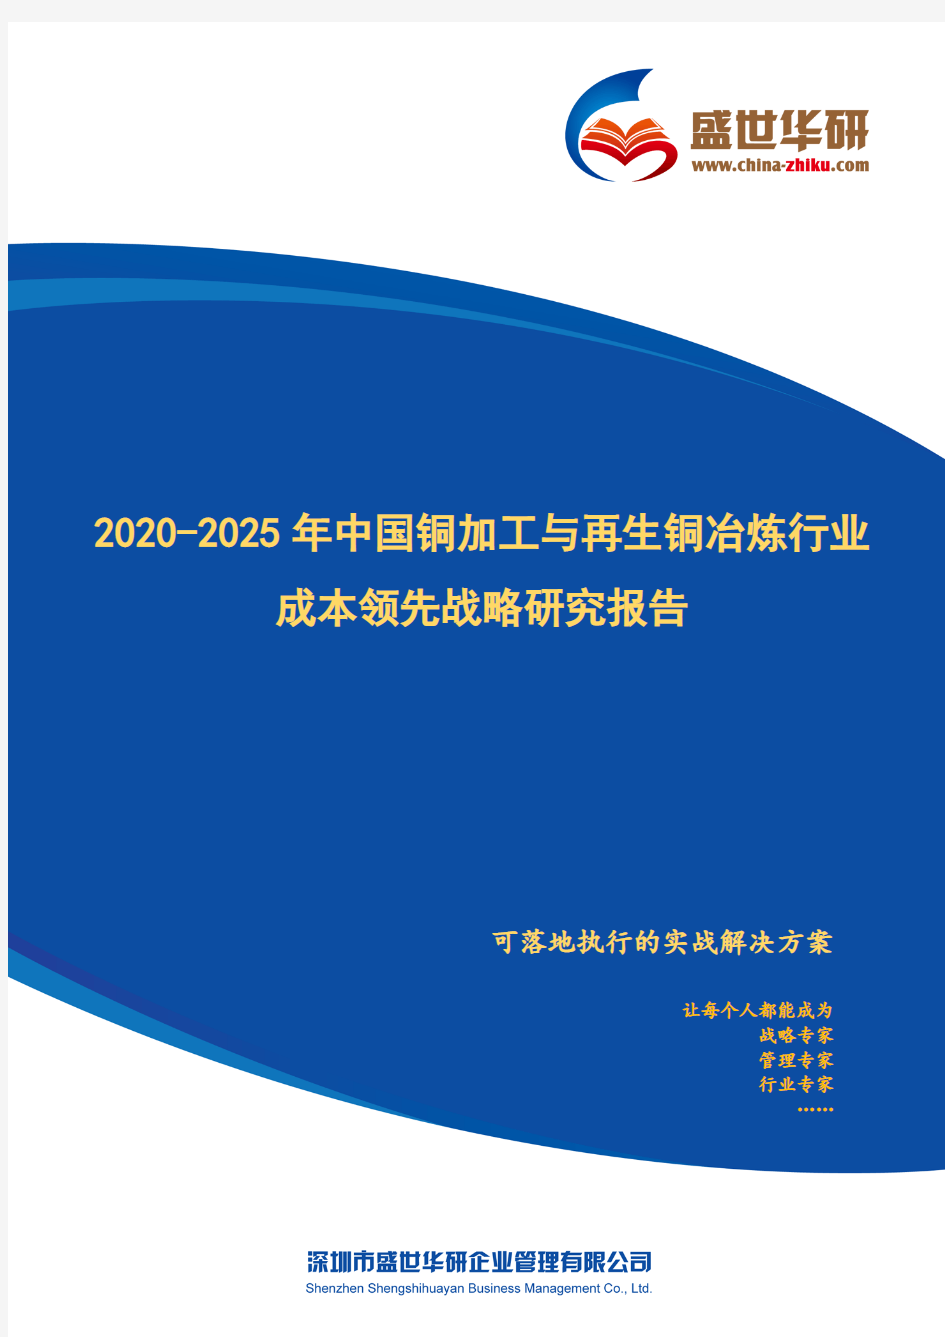 【完整版】2020-2025年中国铜加工与再生铜冶炼行业成本领先战略研究报告